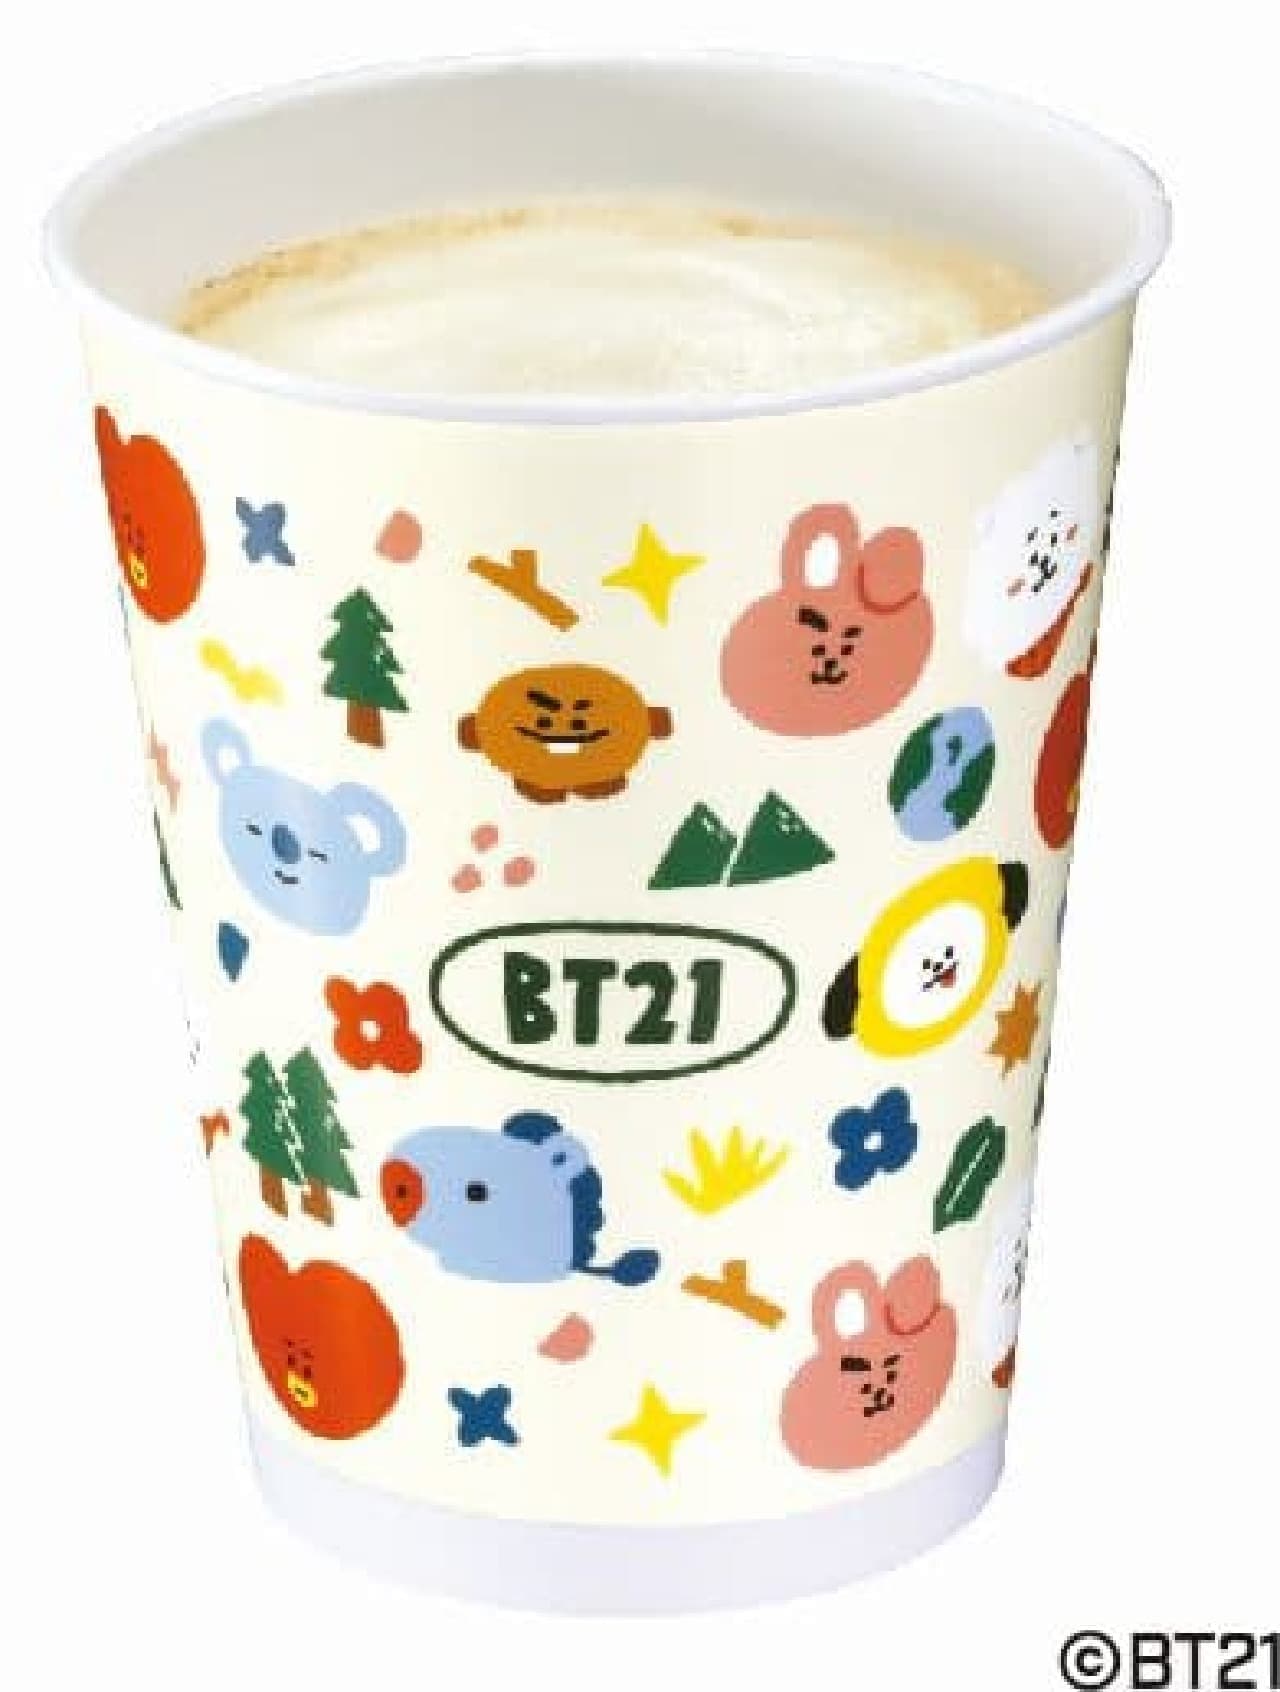 Kura Sushi "BT21 Original Cup Milk Caramel Cafe Latte